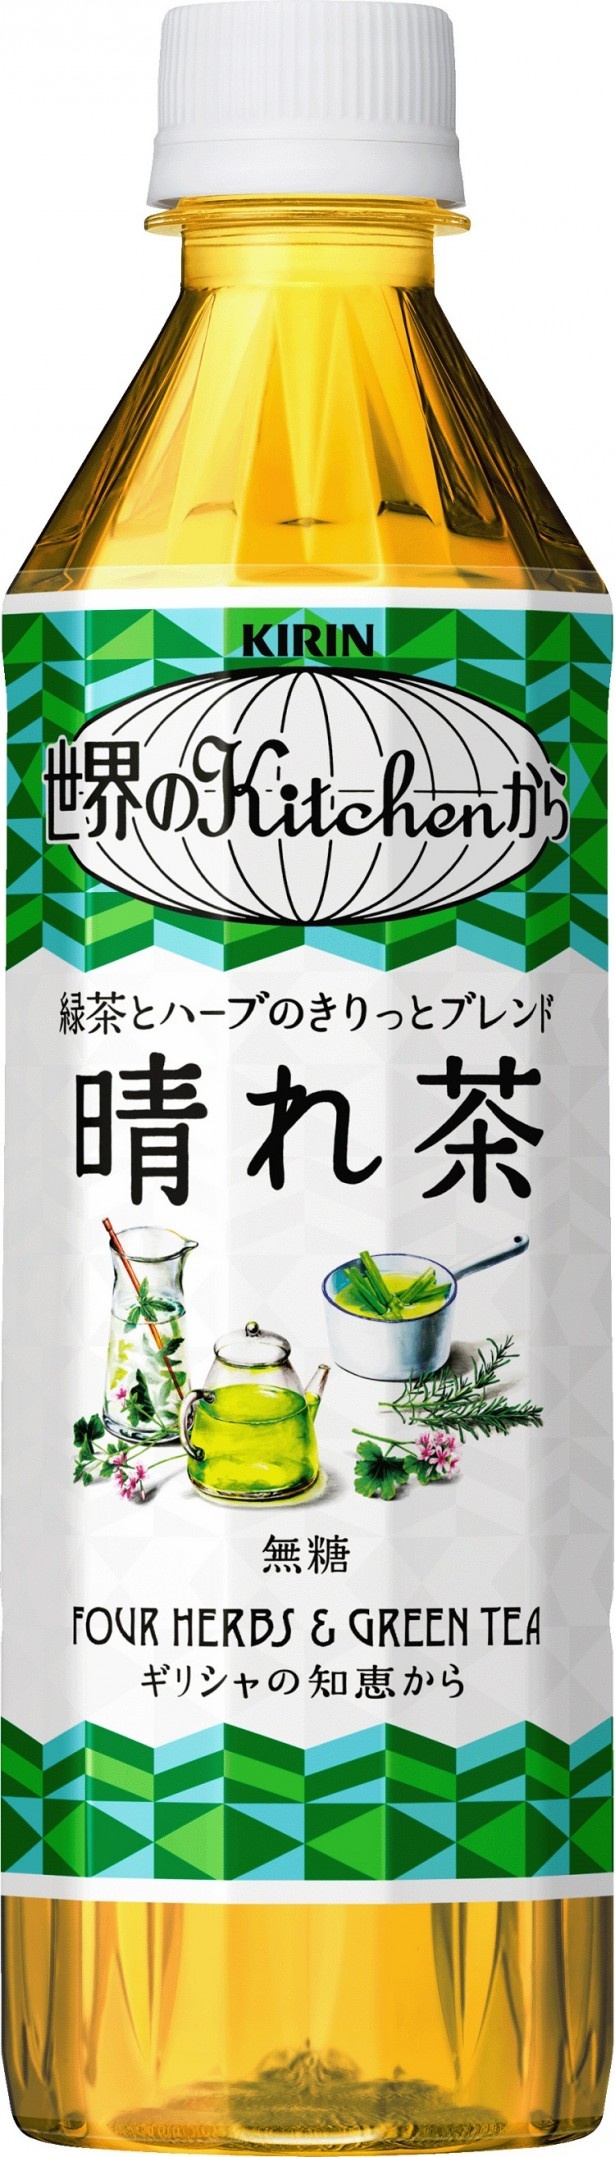 緑茶に4種のハーブソースをブレンドした｢キリン 世界のKitchenから 晴れ茶｣(希望小売価格・税抜140円)。毎日の食事にハーブを使うギリシャのお母さんの知恵がヒント